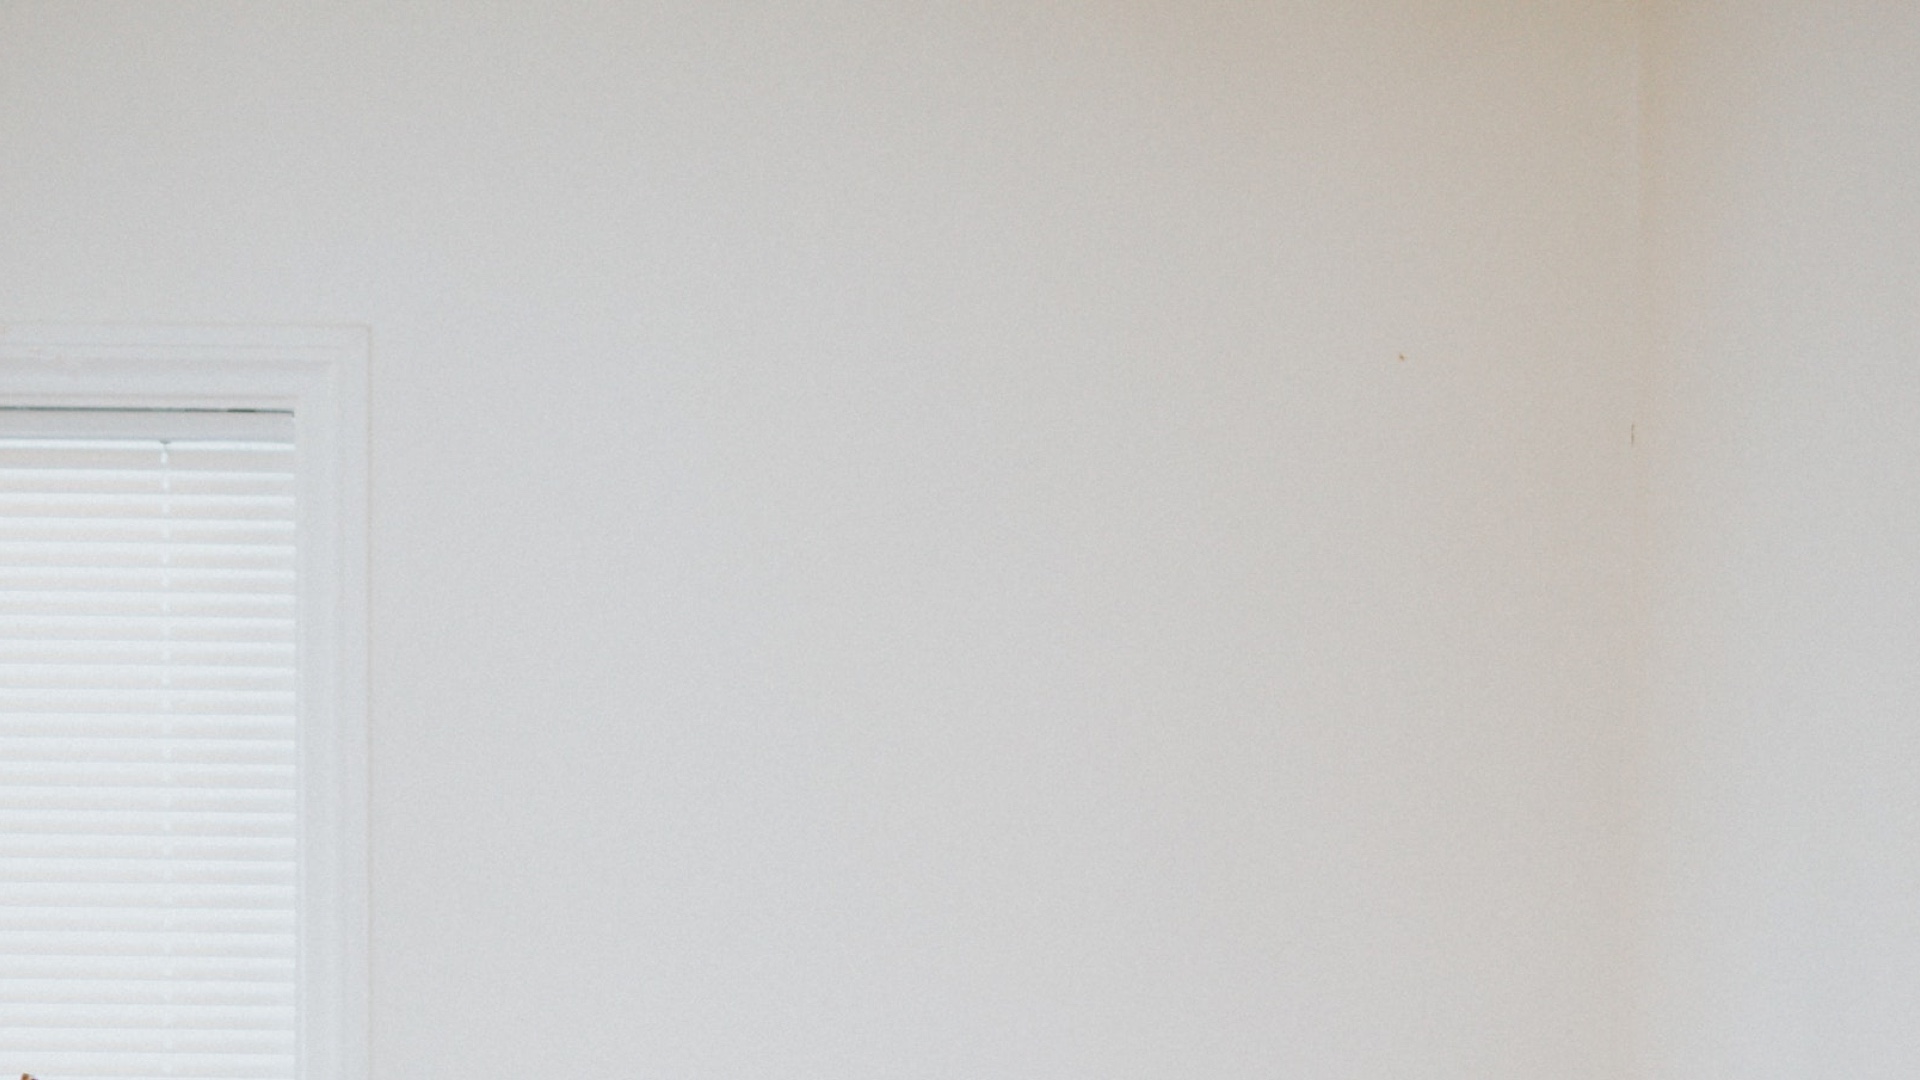 ブラインドのある窓の一部と白い壁の無料バーチャル背景素材